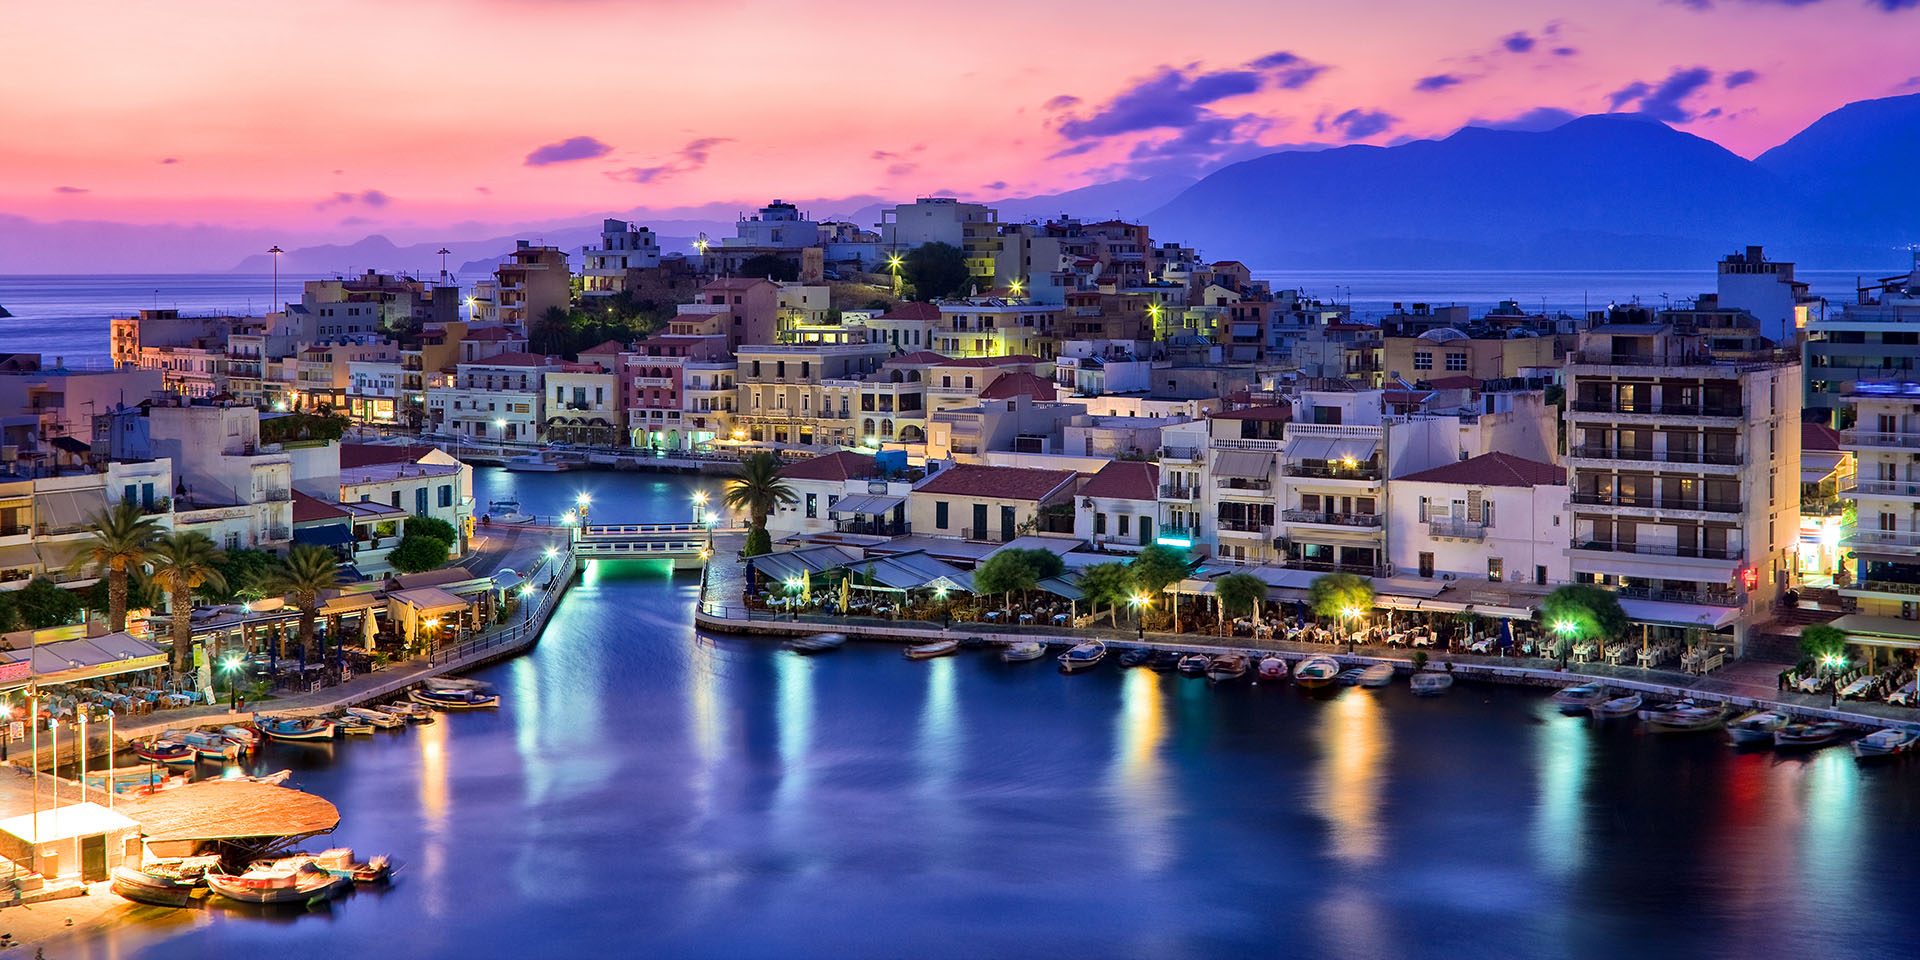 Cities of Crete